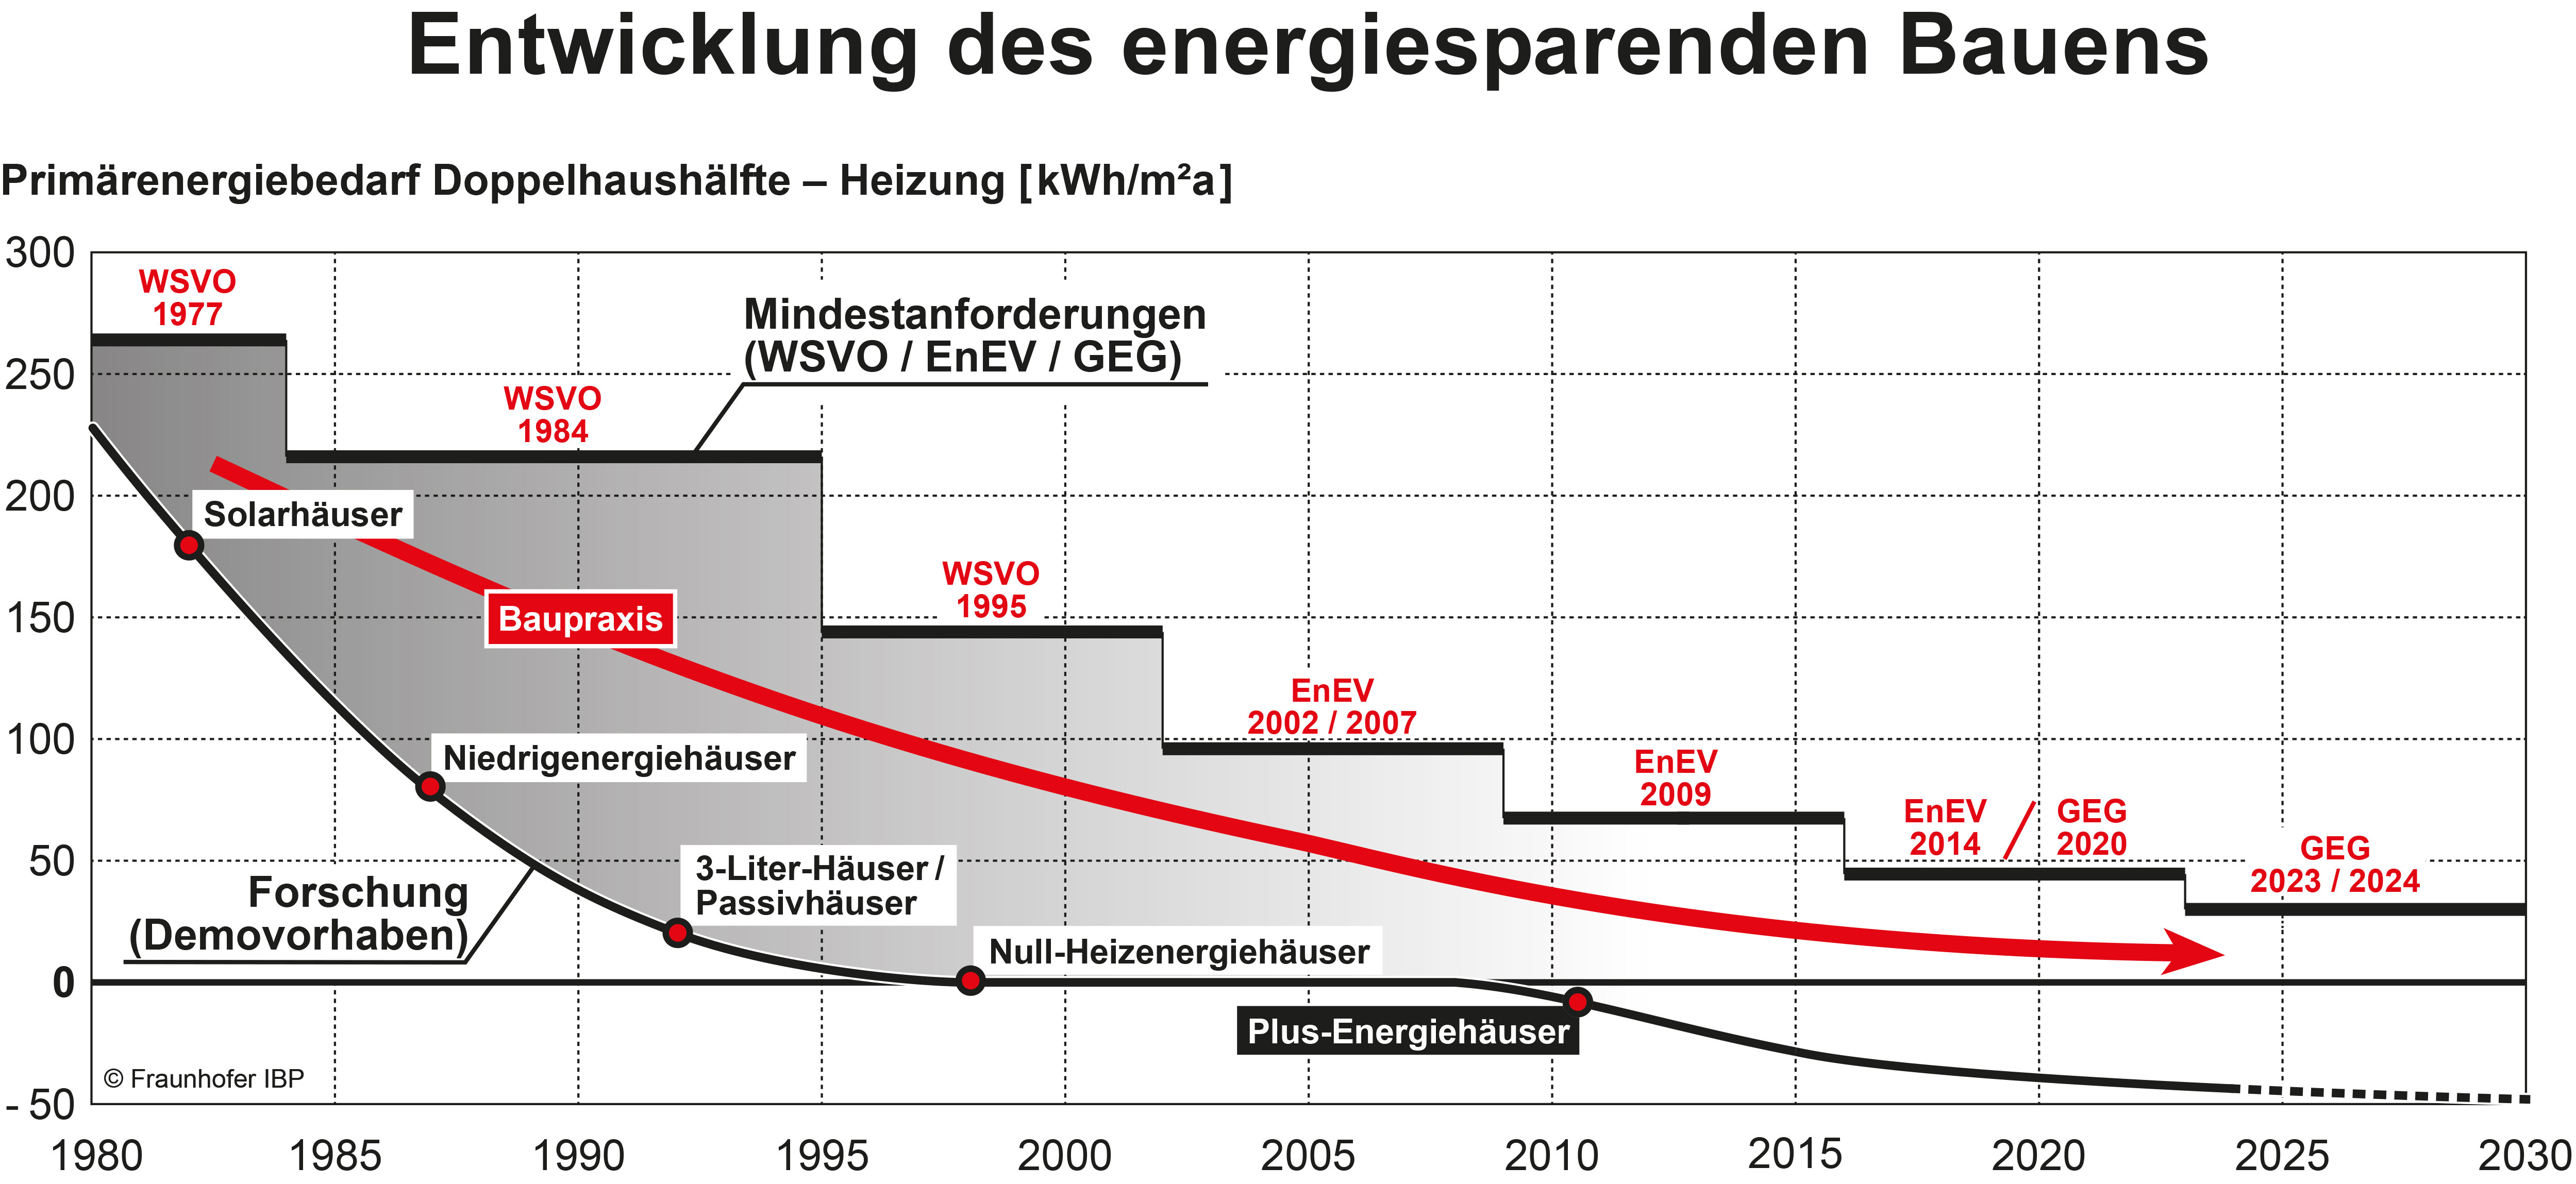 Grafik zur Entwicklung des energiesparenden Bauens